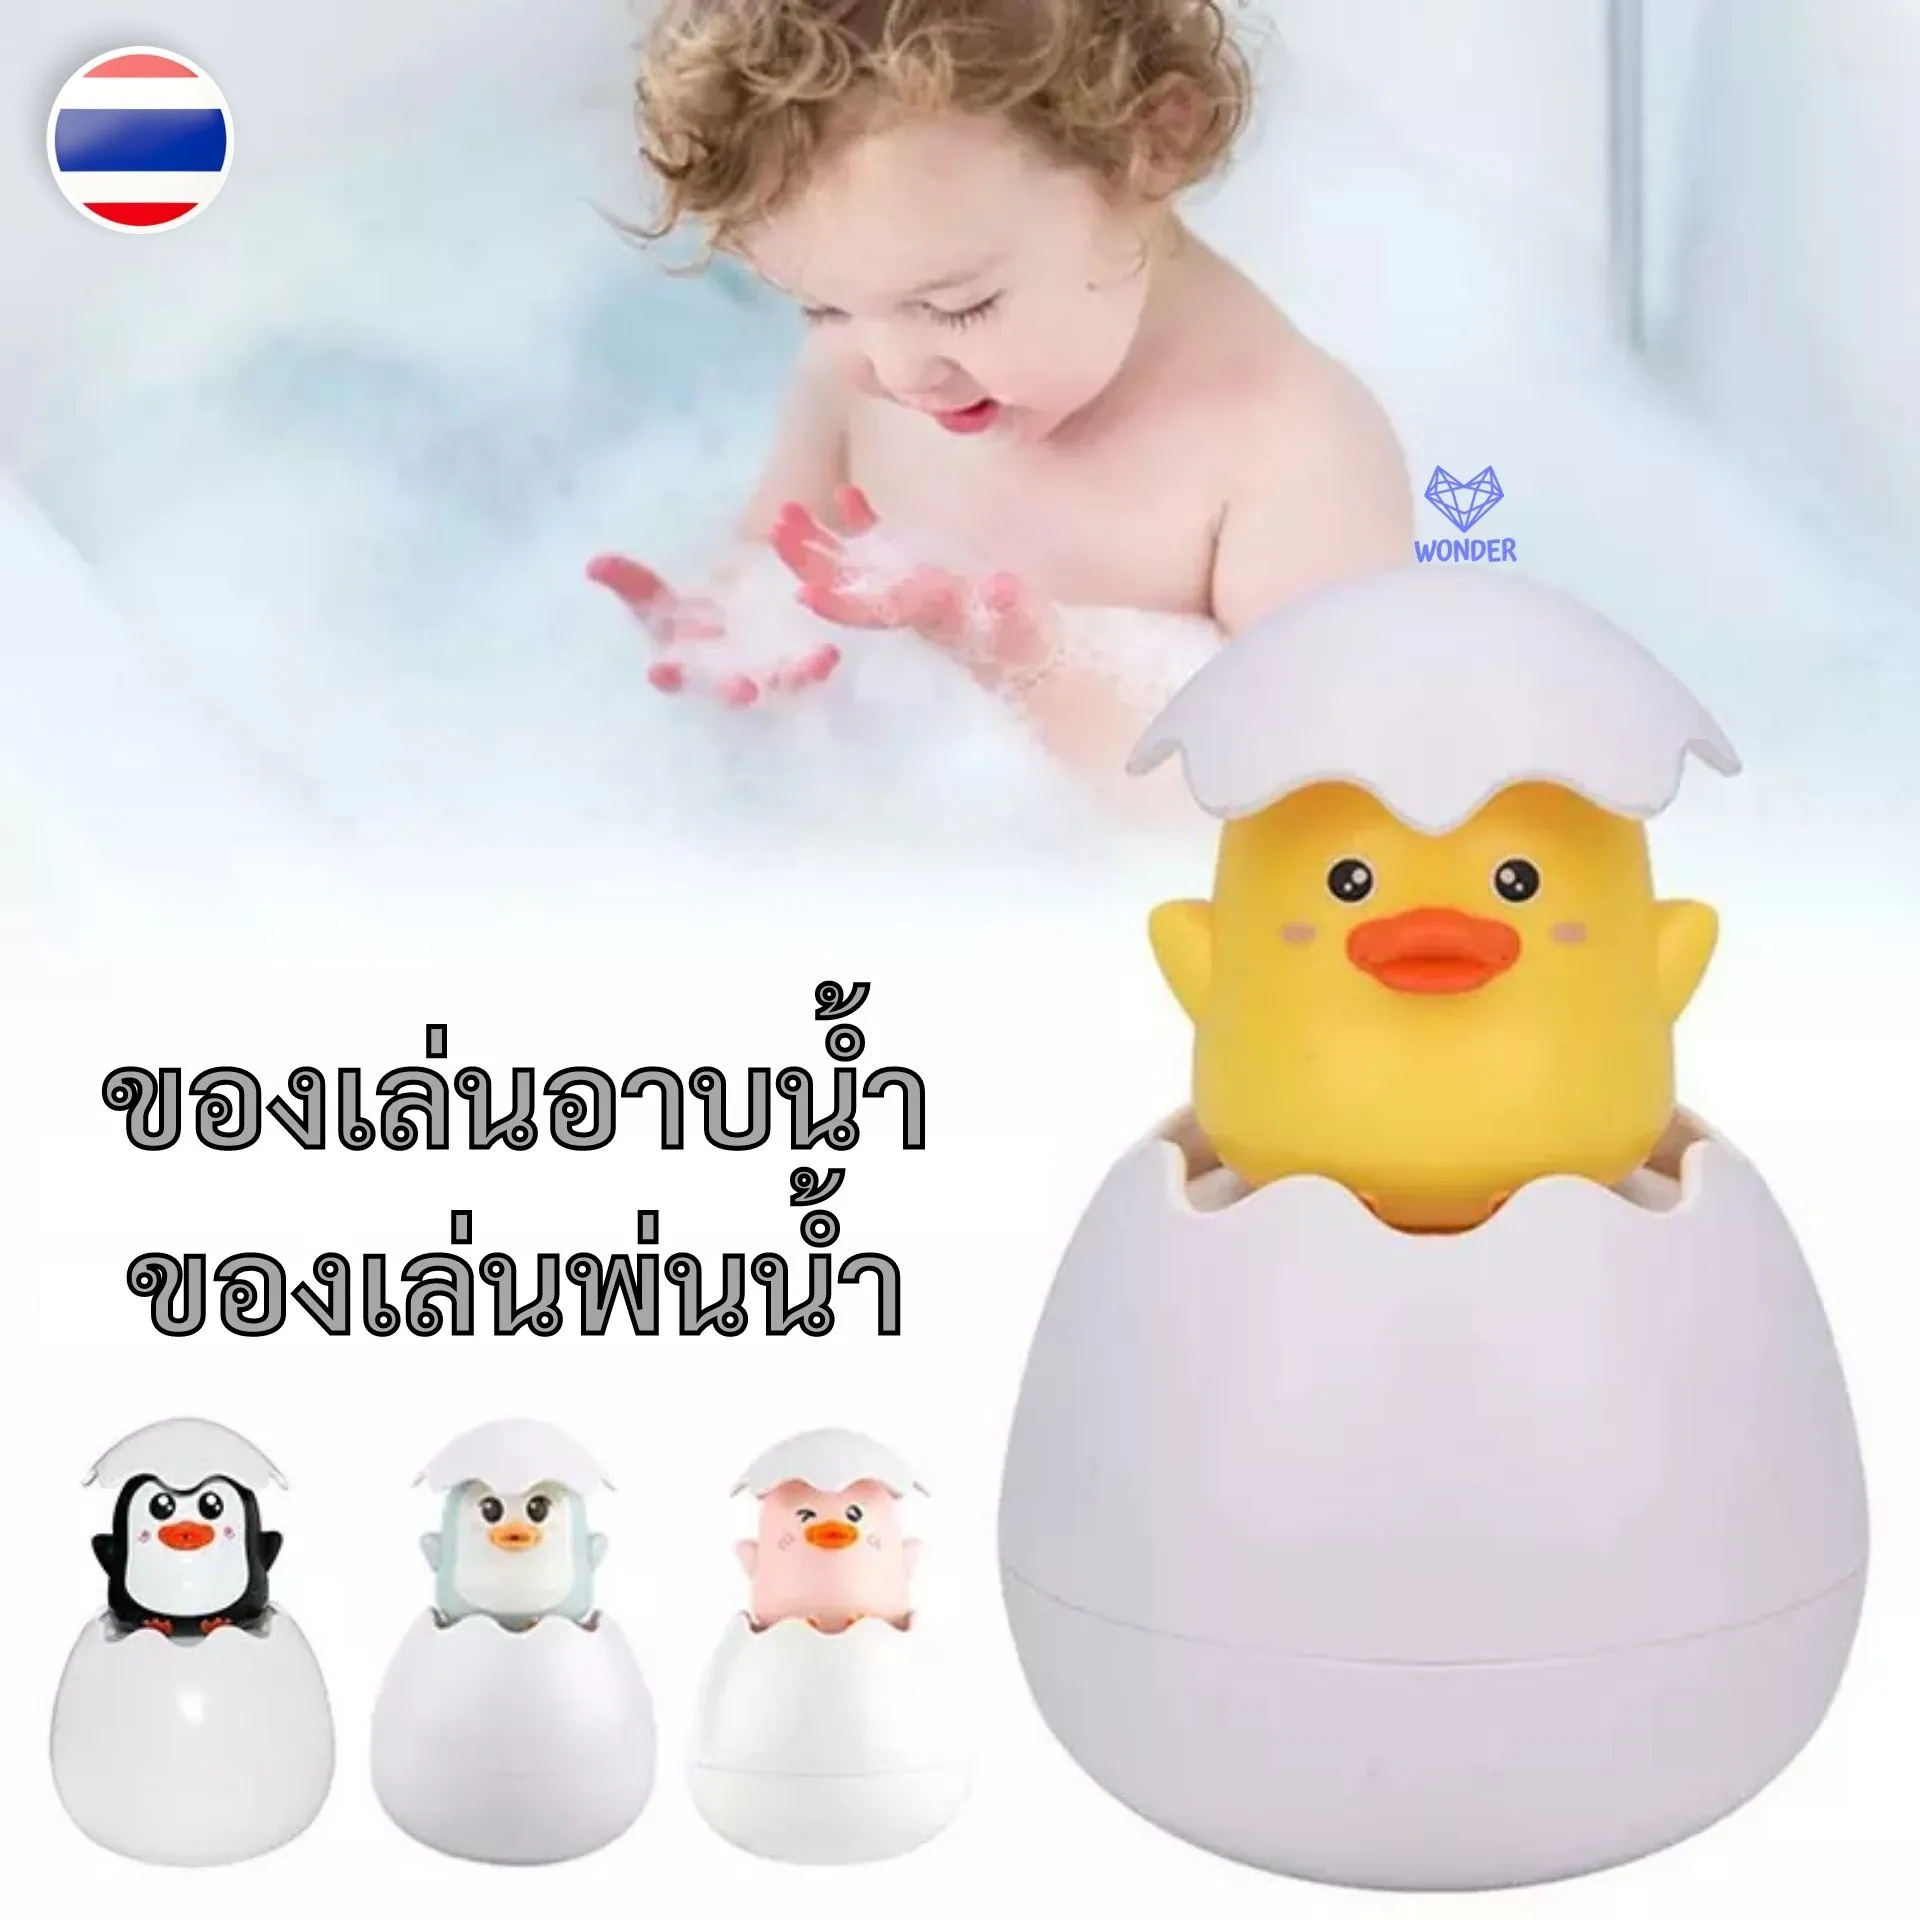 📍 ของเล่นพ่นน้ำ Bath Toys ของเล่นอาบน้ำ ของเล่นในห้องน้ำ ของเล่นอาบน้ำเด็ก ของเล่นเด็กอาบน้ำ ของเล่นเด็ก Baby Bathtub Toys W165